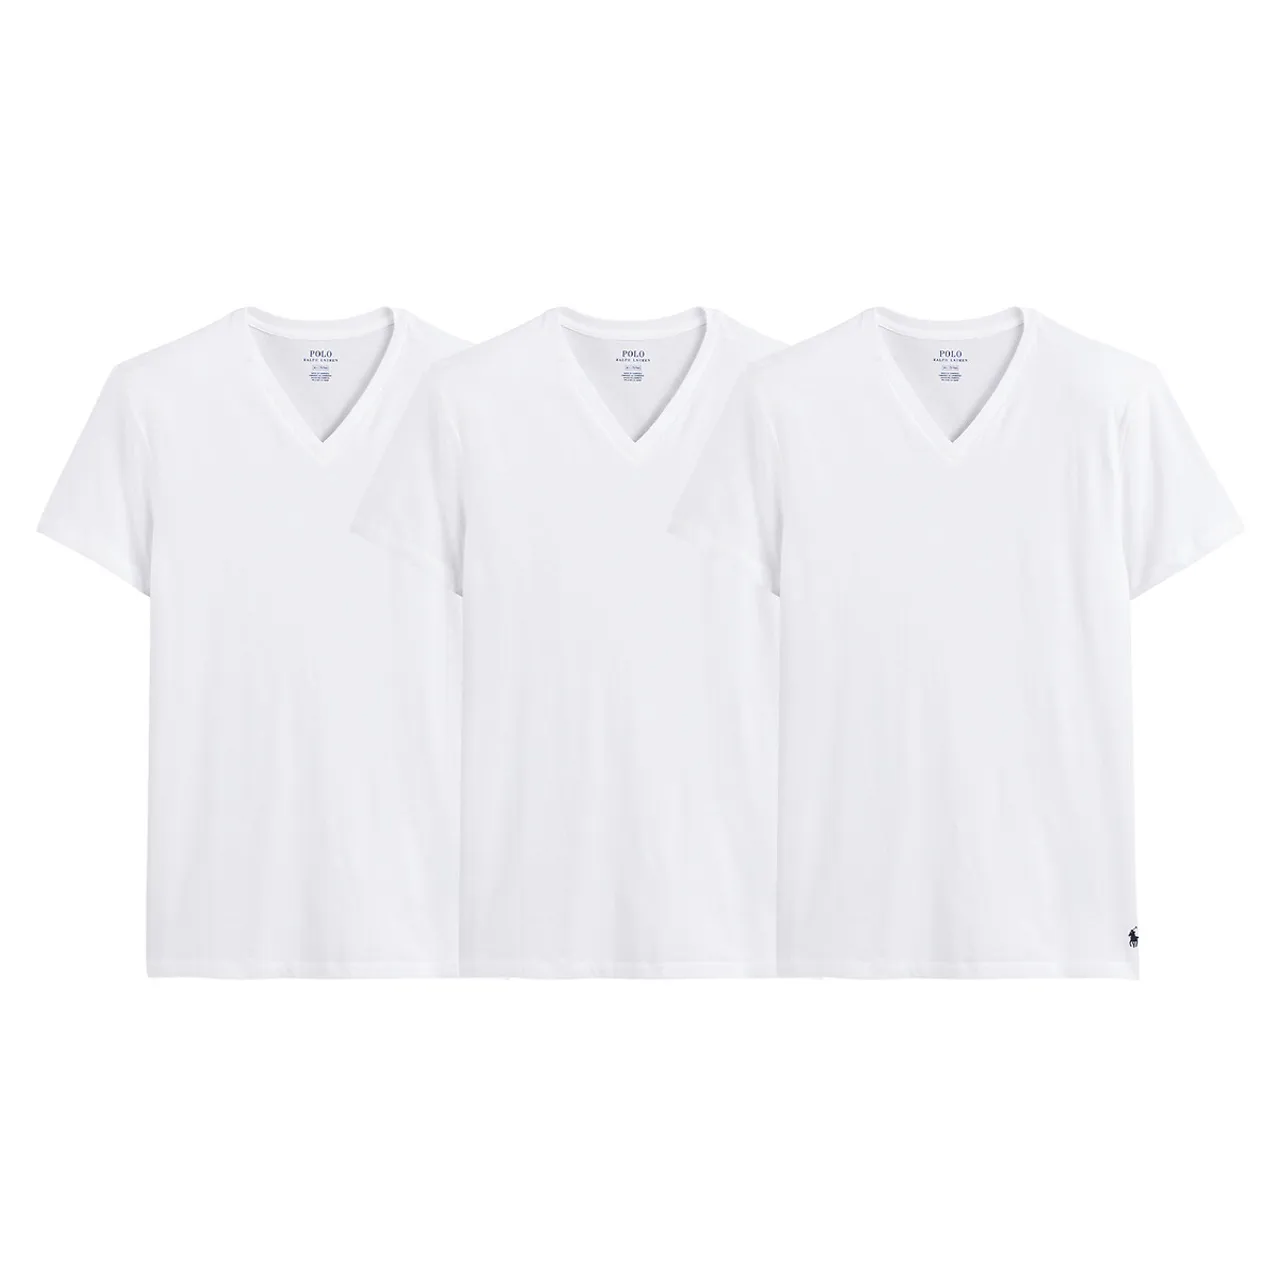 Set van 3 t-shirts met V-hals